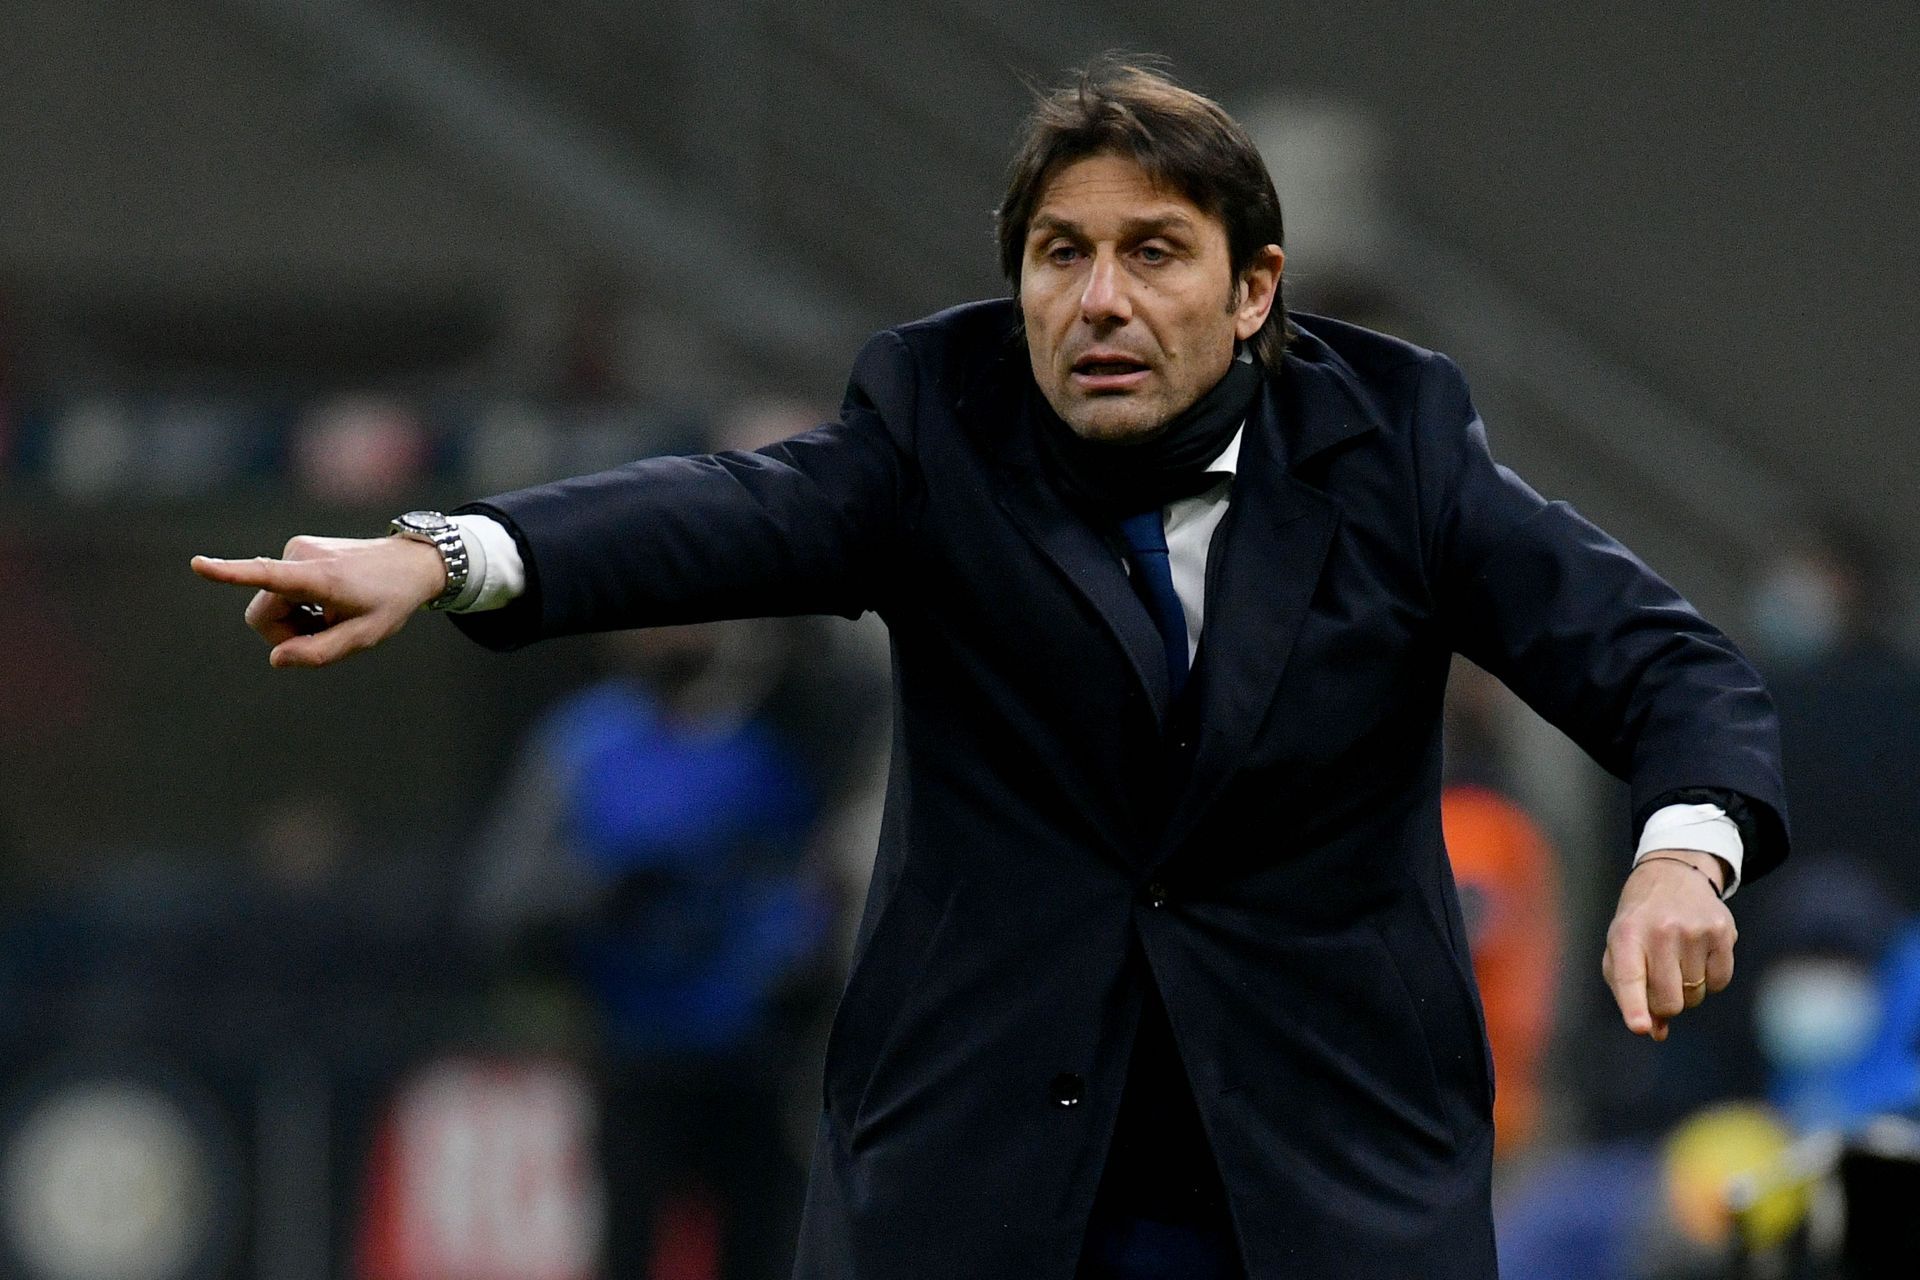 Antonio Conte could replace Nuno Espirito Santo at Tottenham Hotspur.